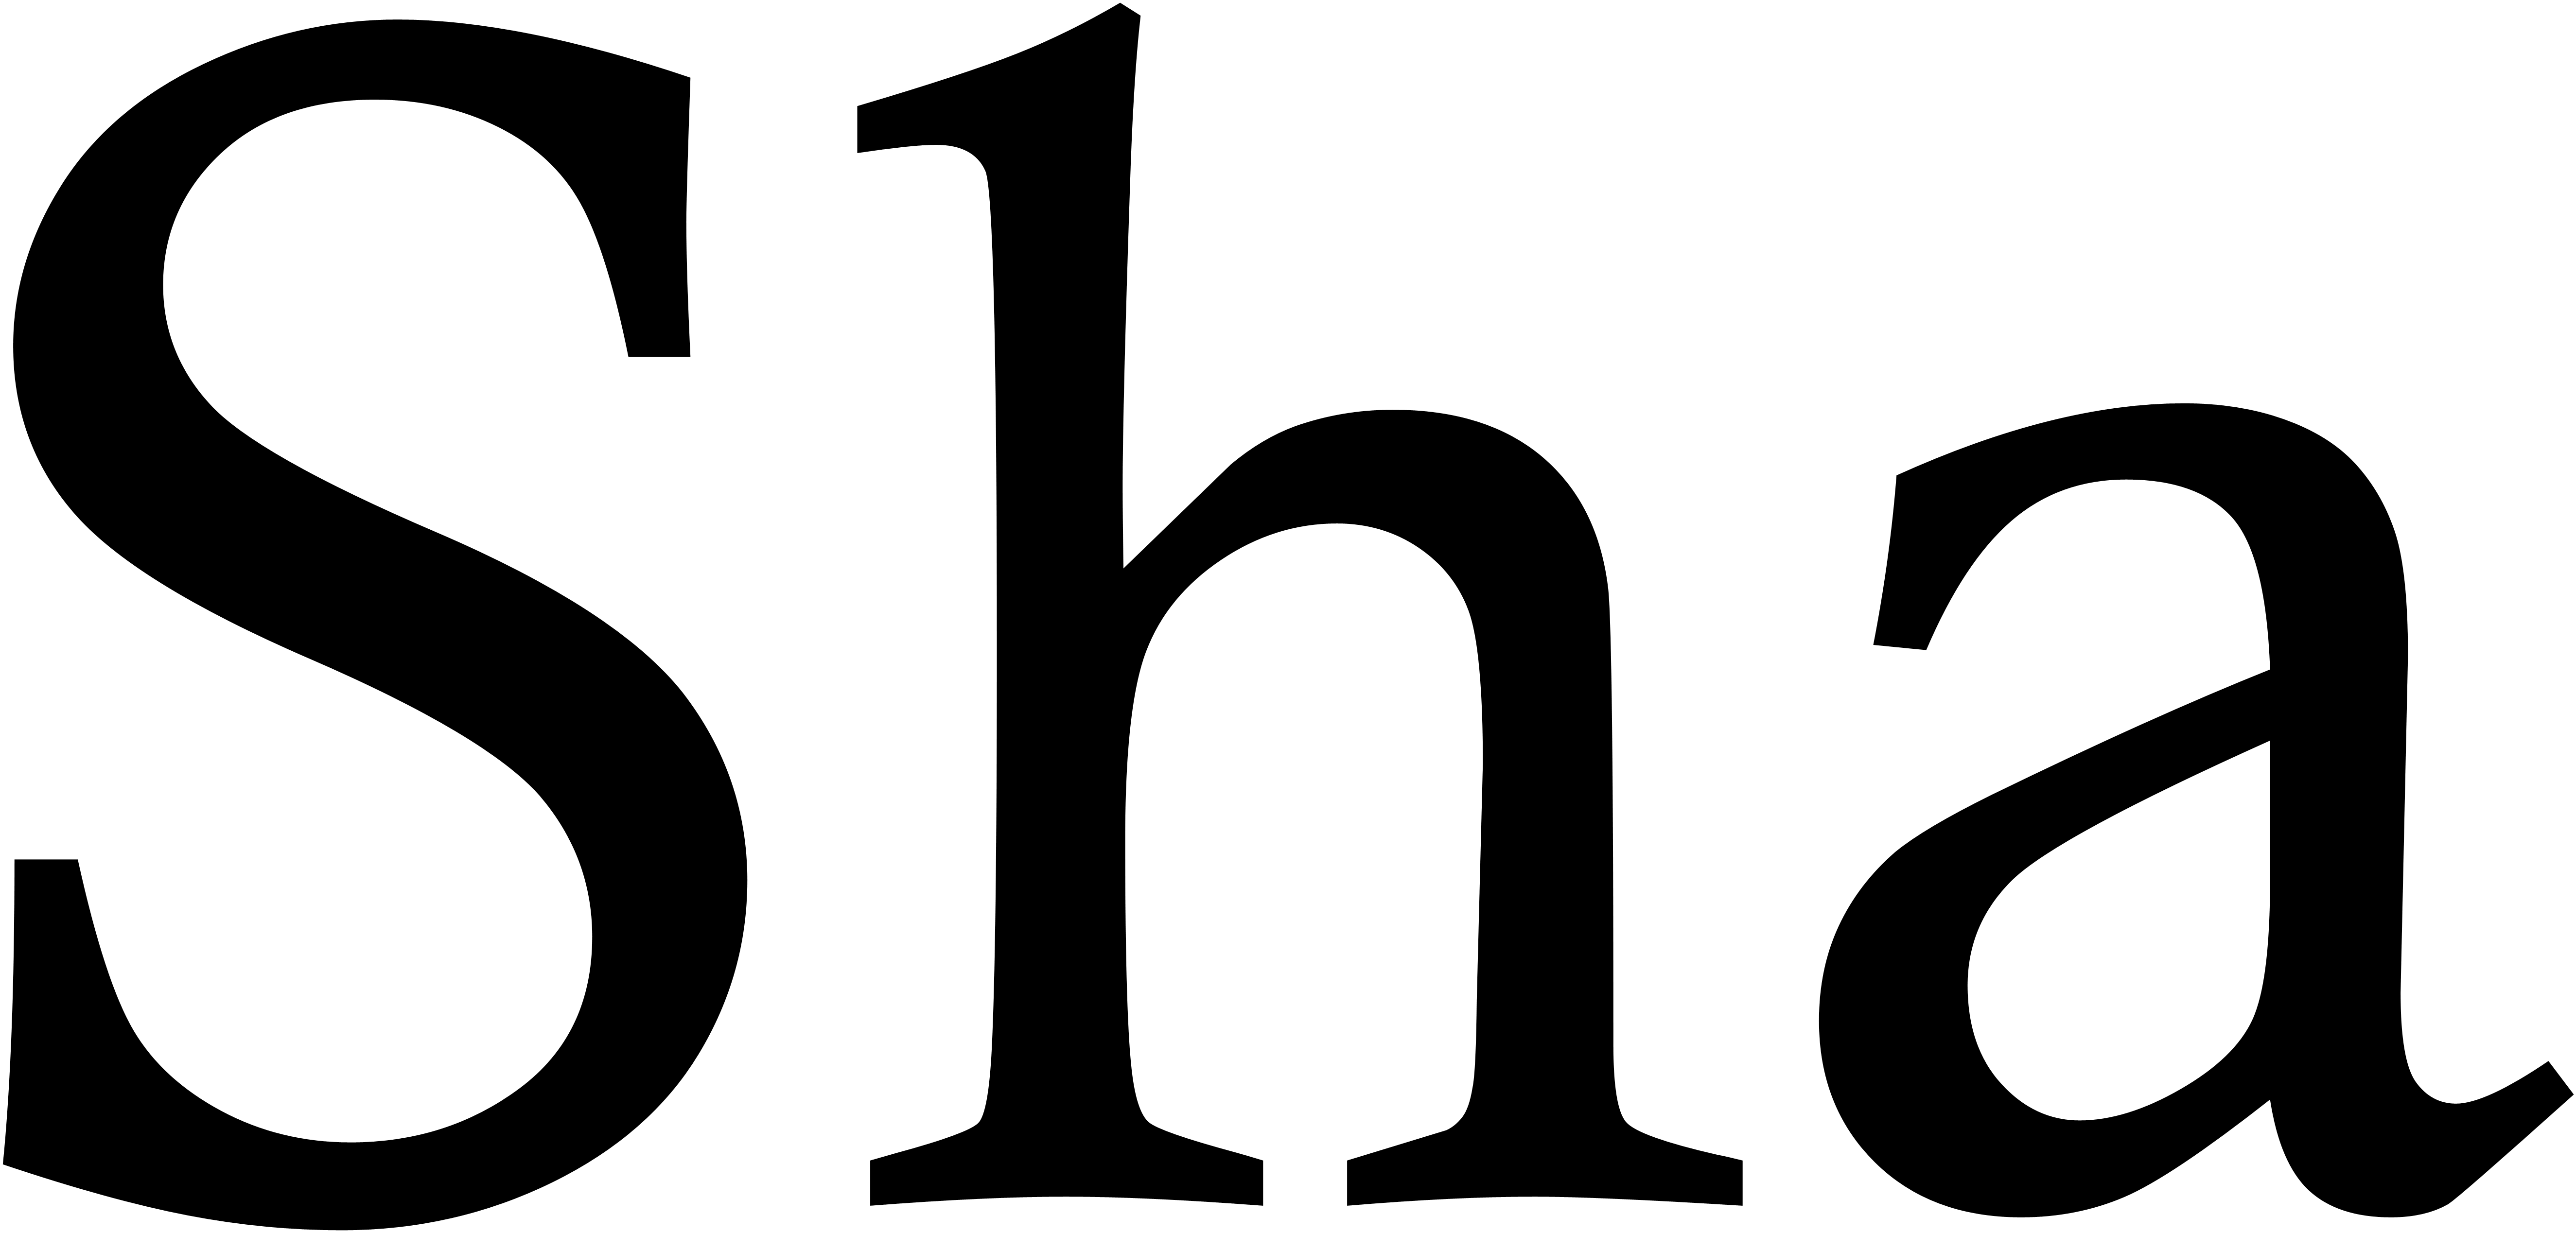 Sha